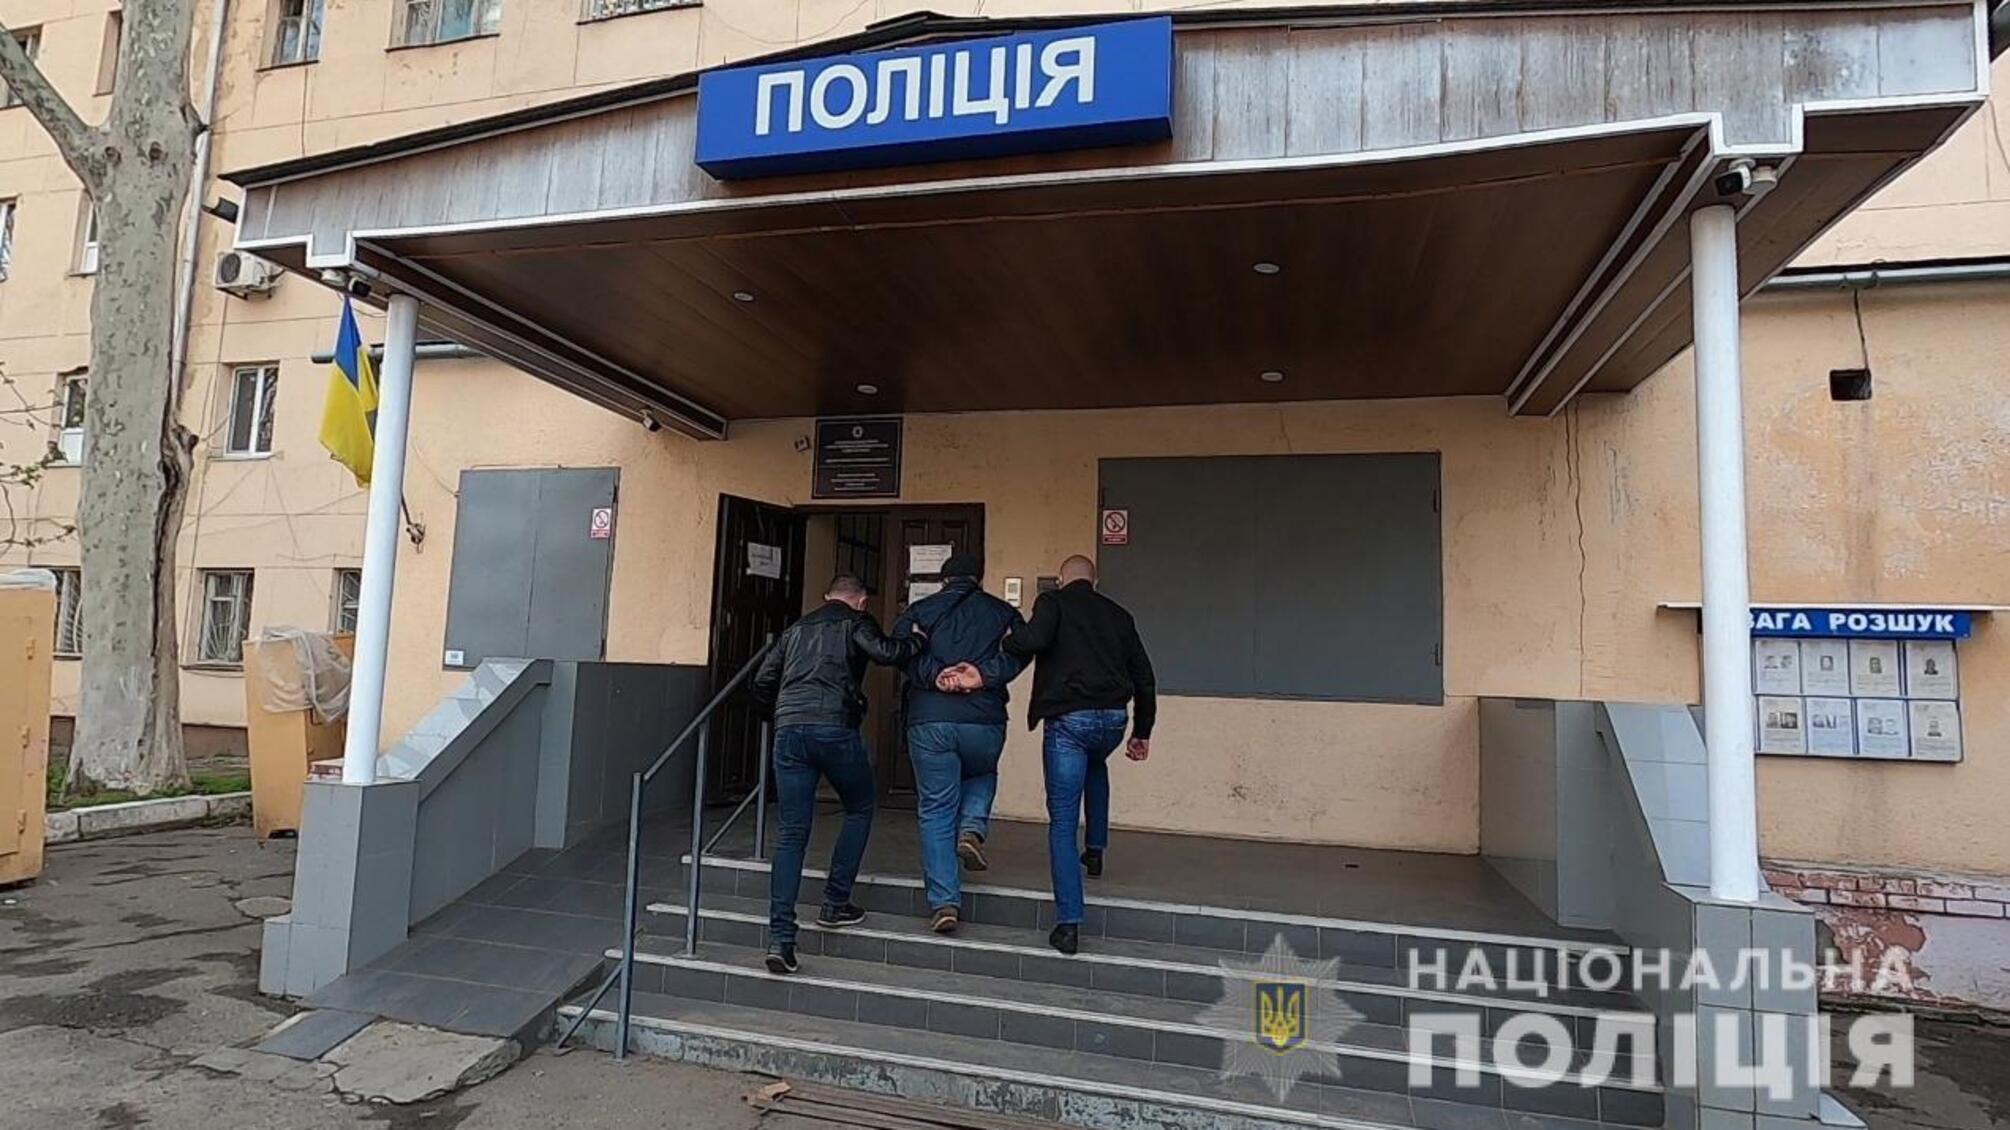 Одеські правоохоронці затримали 44-річного містянина, який займався незаконним виготовленням та збутом вогнепальної зброї